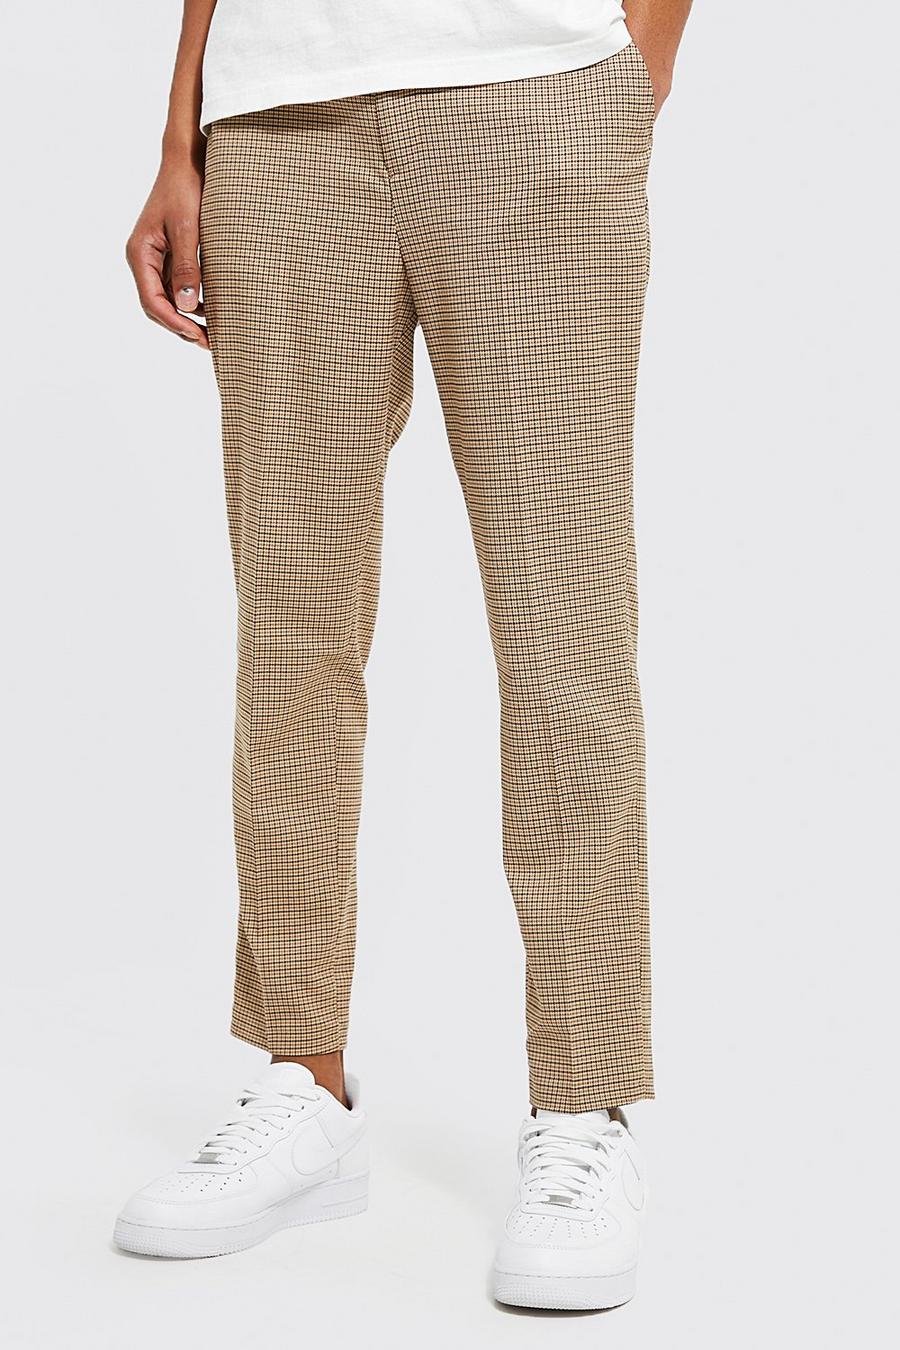 חום brown מכנסיים חומים בגזרת קרסול צרה ובדוגמת פפיטה